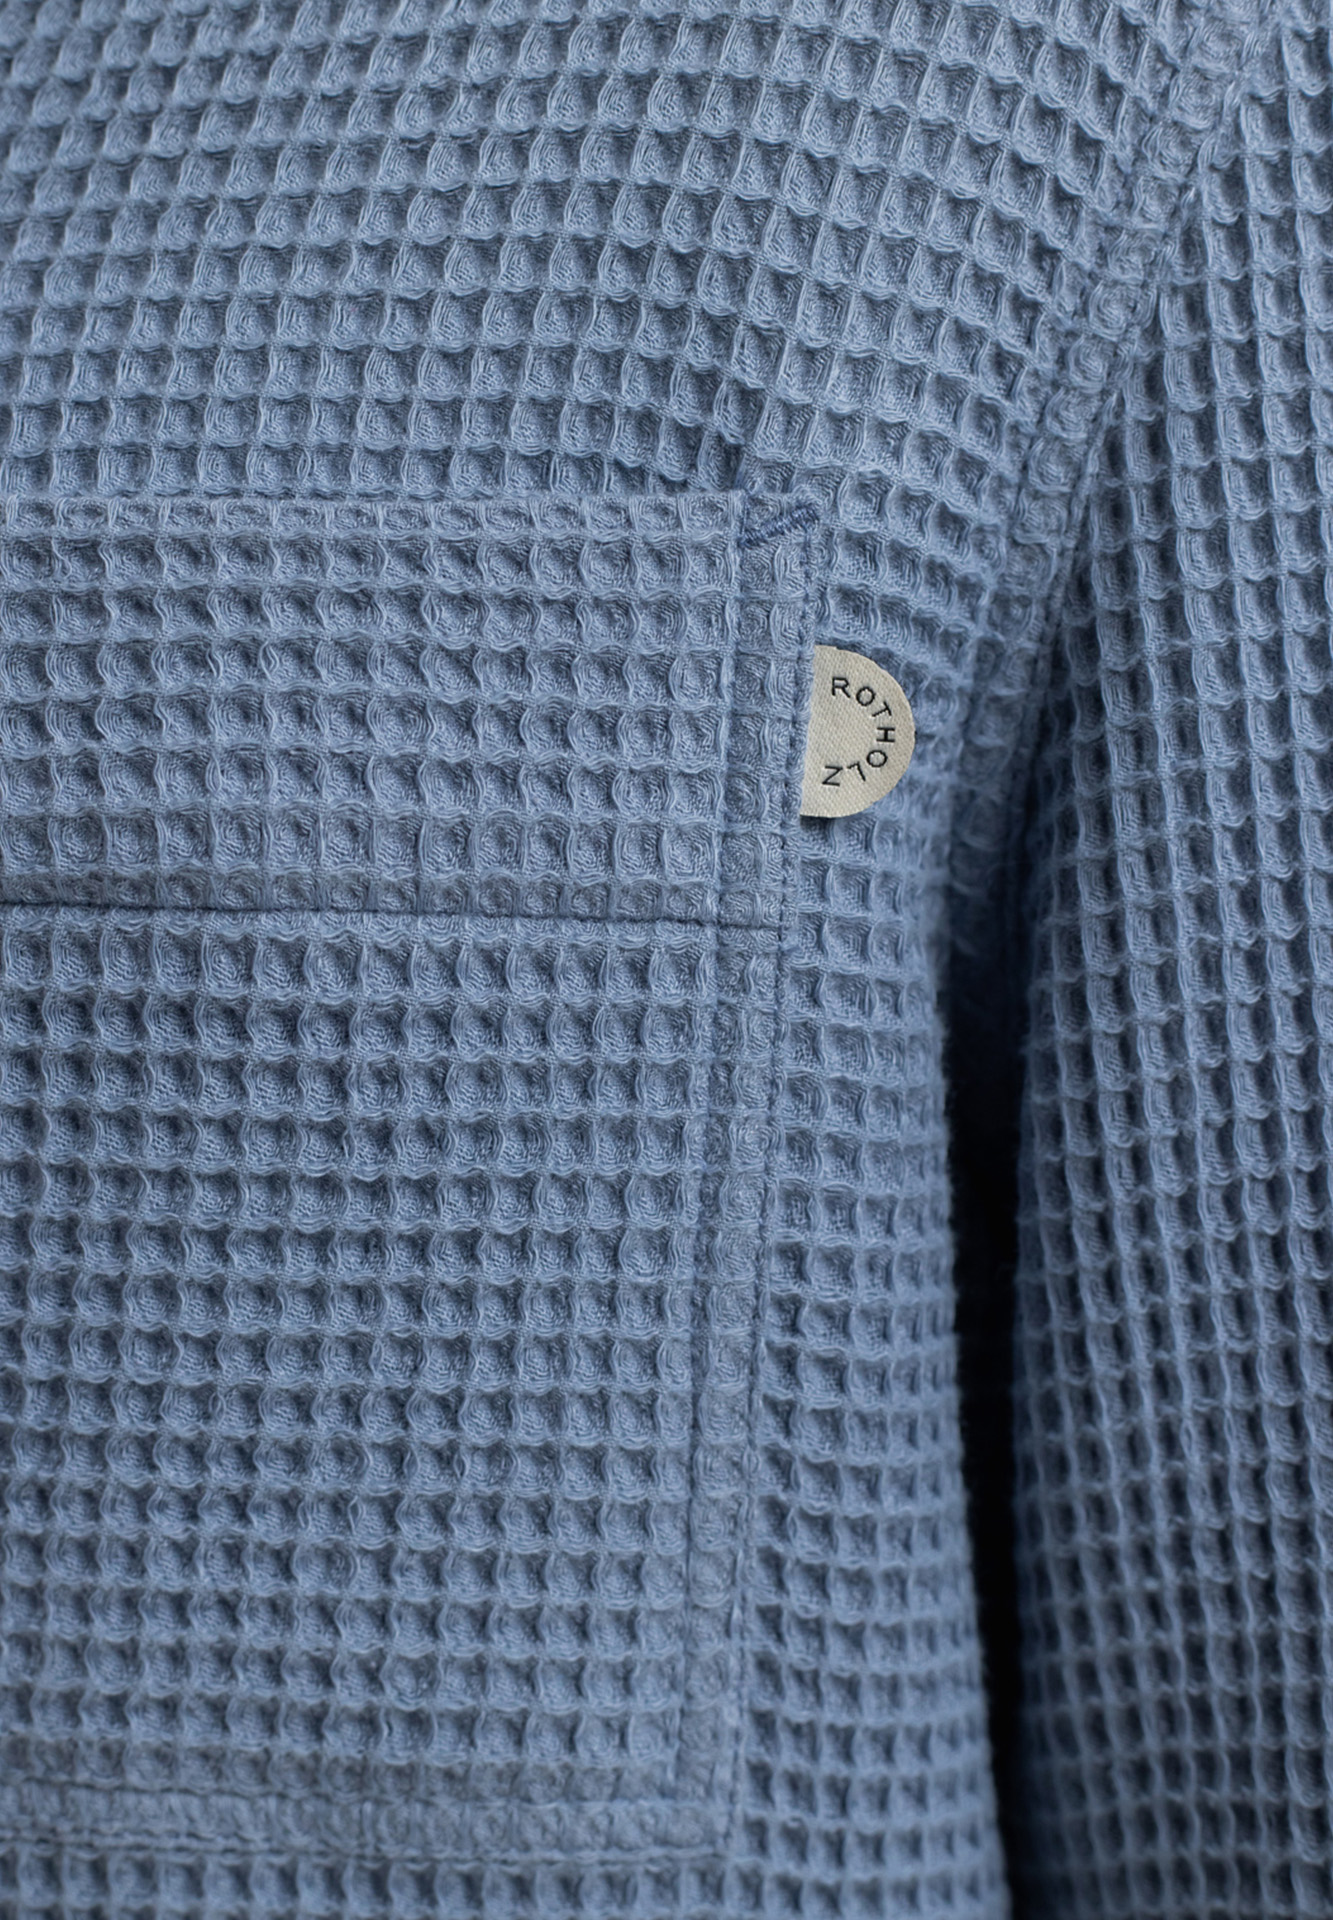 ROTHOLZ Workwear Overjacket stone blue XL